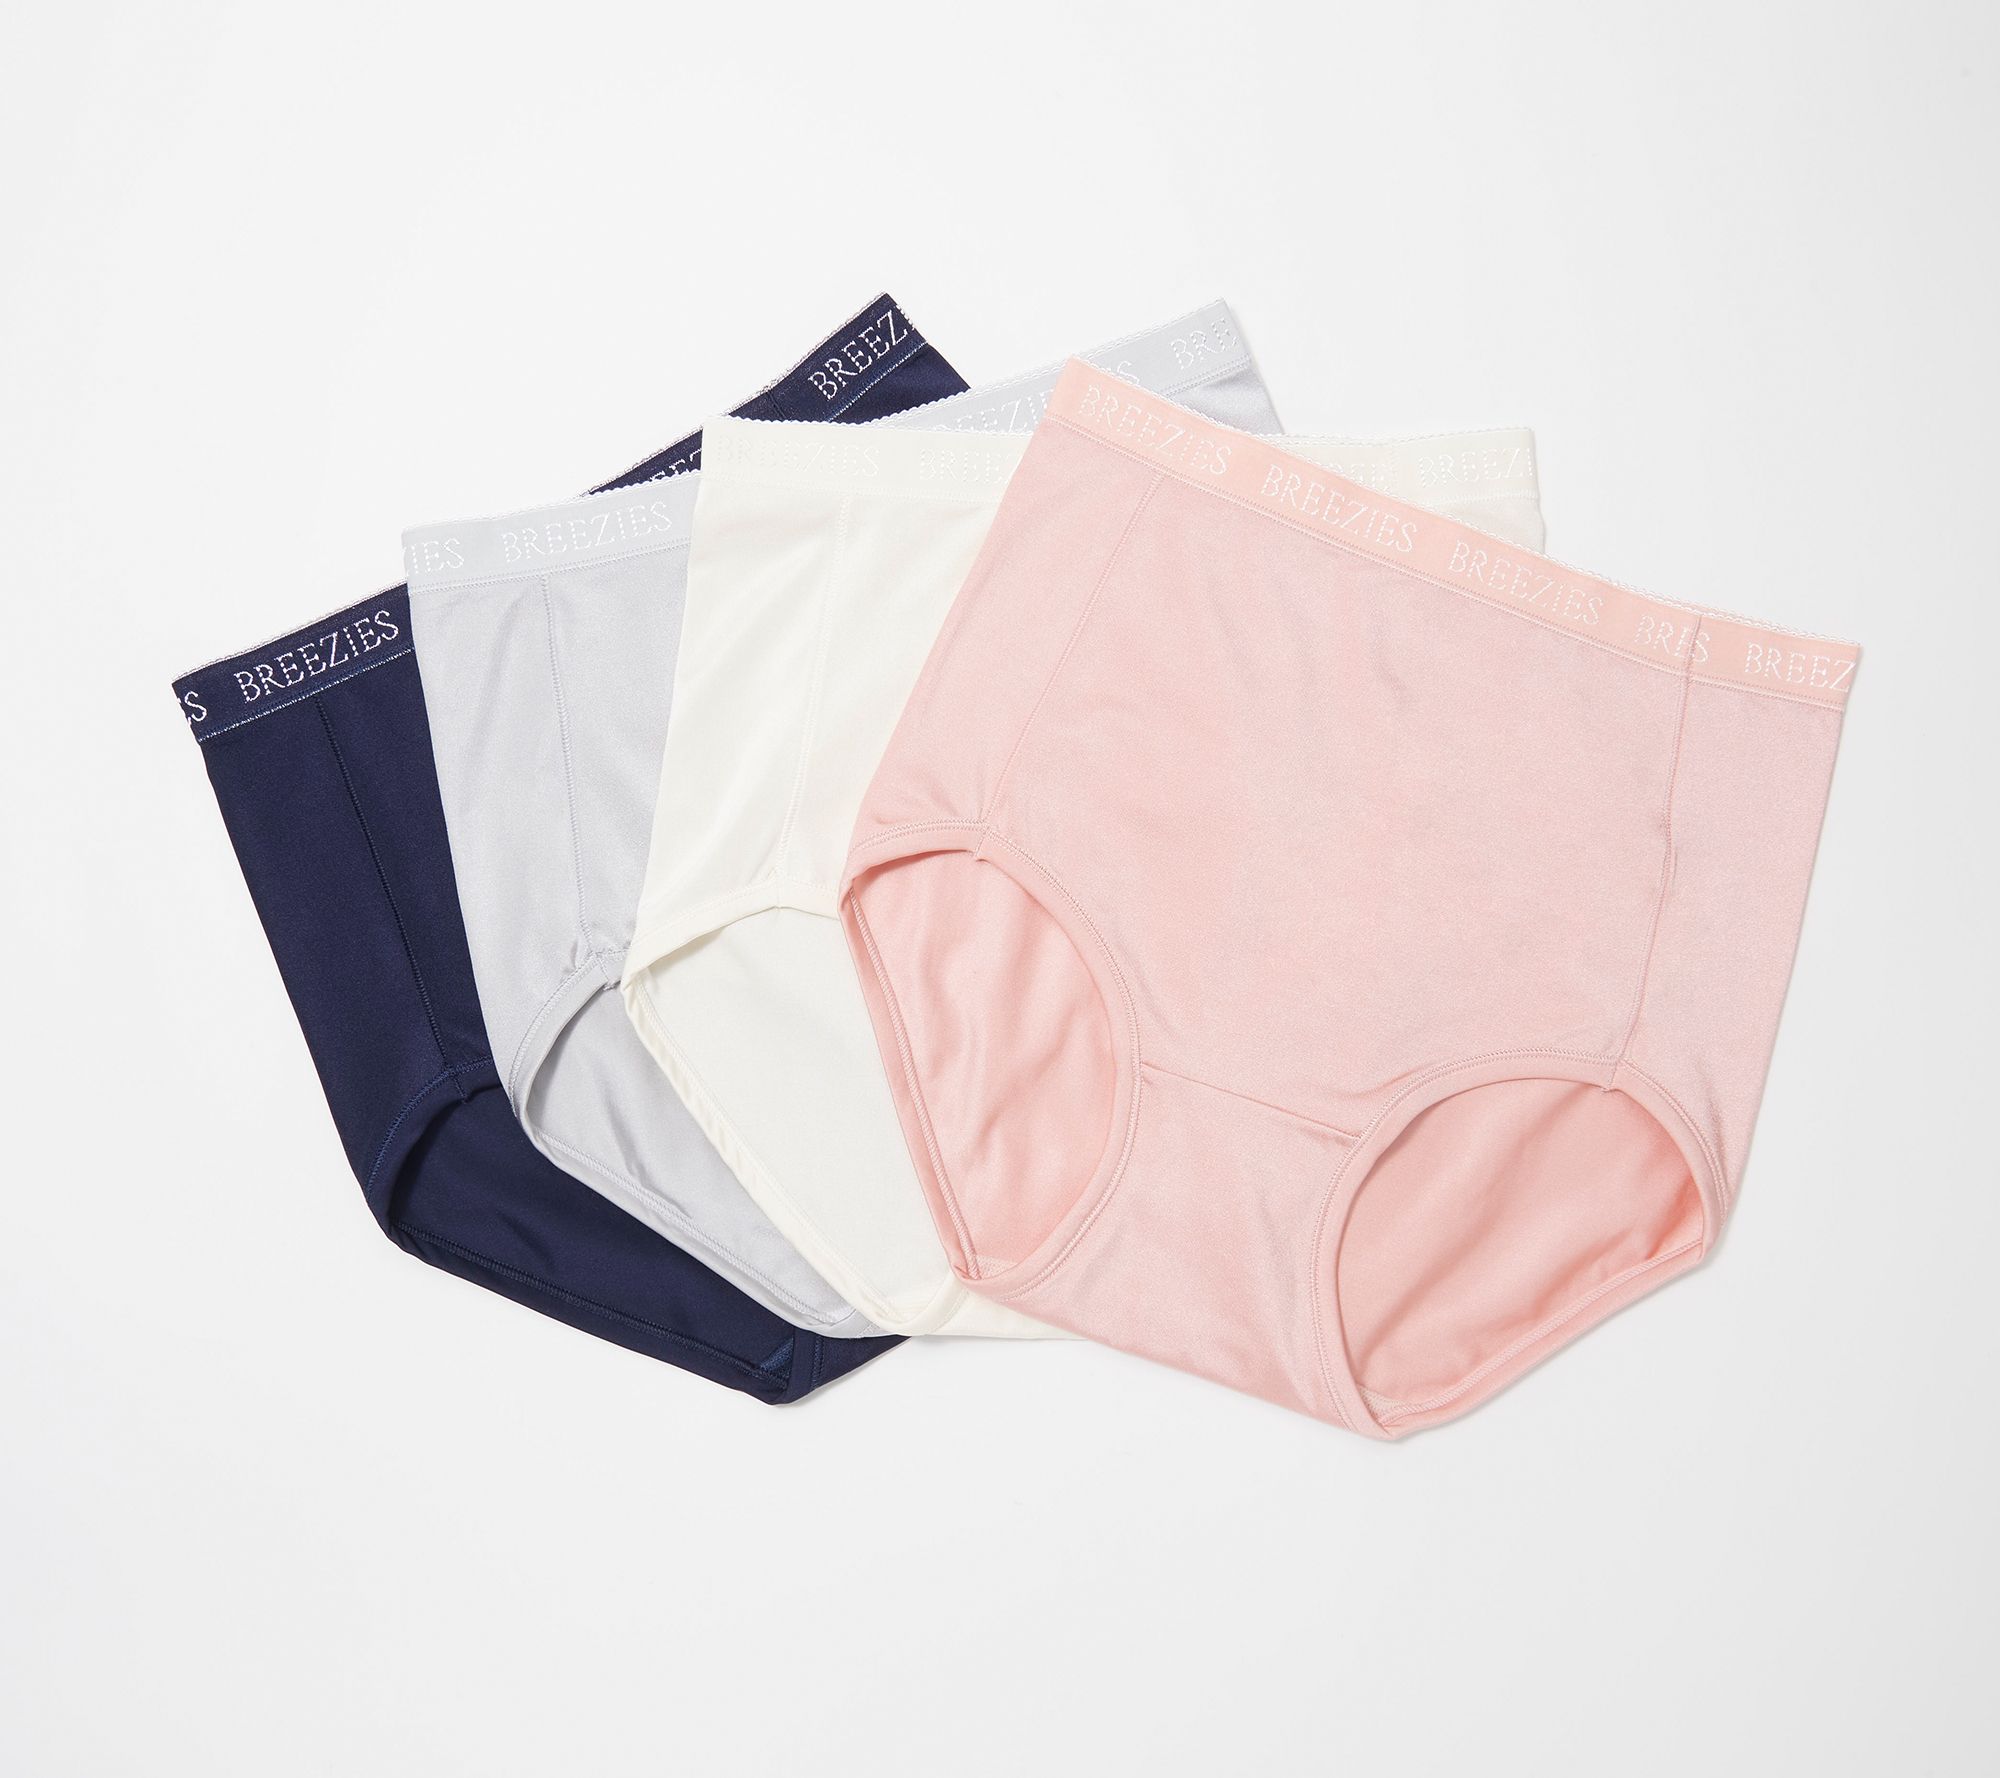 Set 3,6,9,12 Pcs. Women nylon panties vintage style underwear soft briefs  Size L 